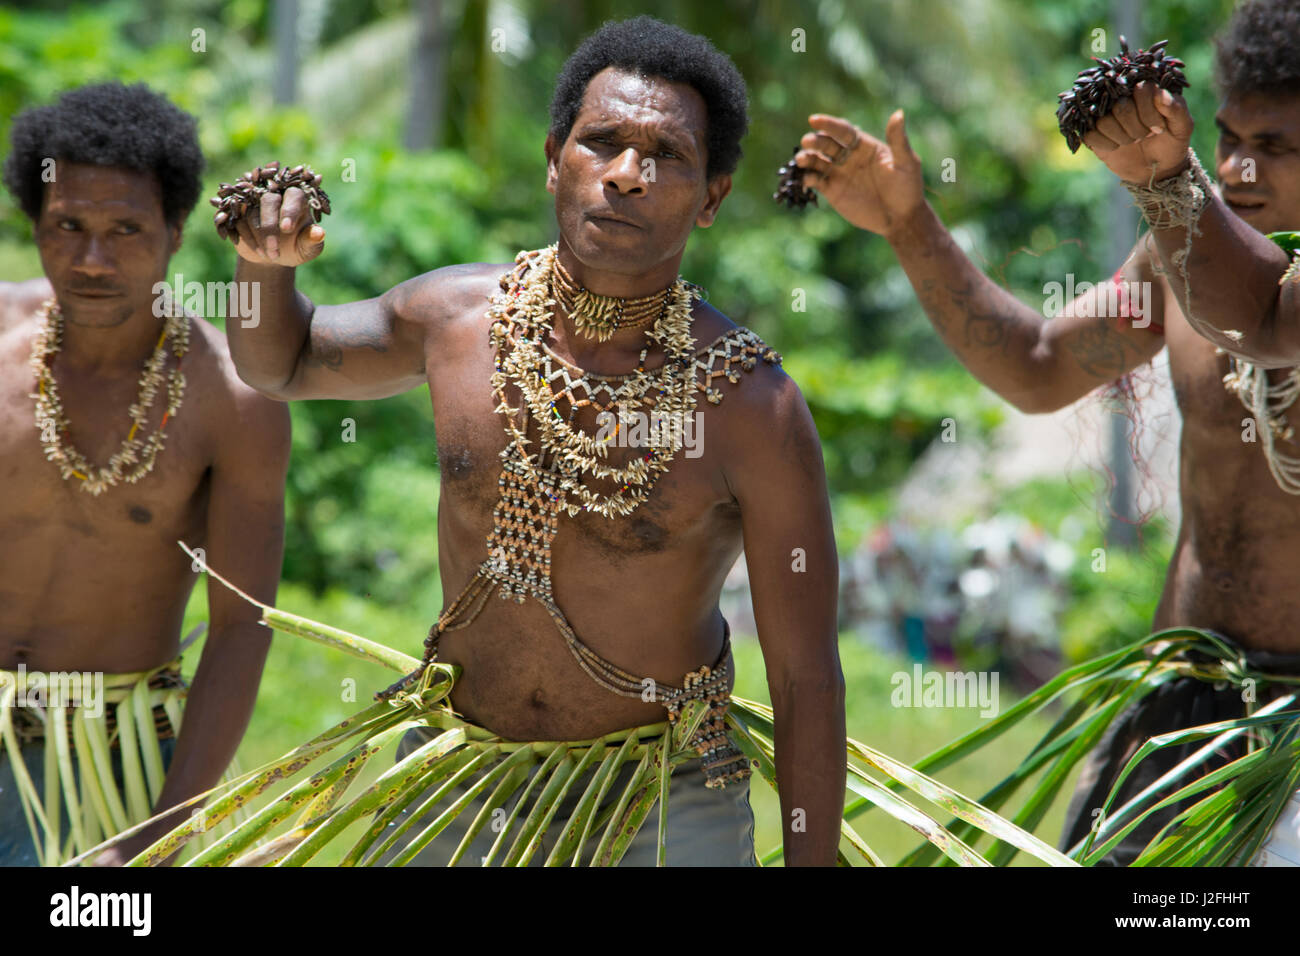 Isole Salomone, isola di Owaraha o Owa Raha (precedentemente noto come Santa Ana), villaggio di Gupuna aka Ghupuna. Folkloristiche tradizionali prestazioni di uomini benvenuti danza, costume con decorazione di shell. Foto Stock